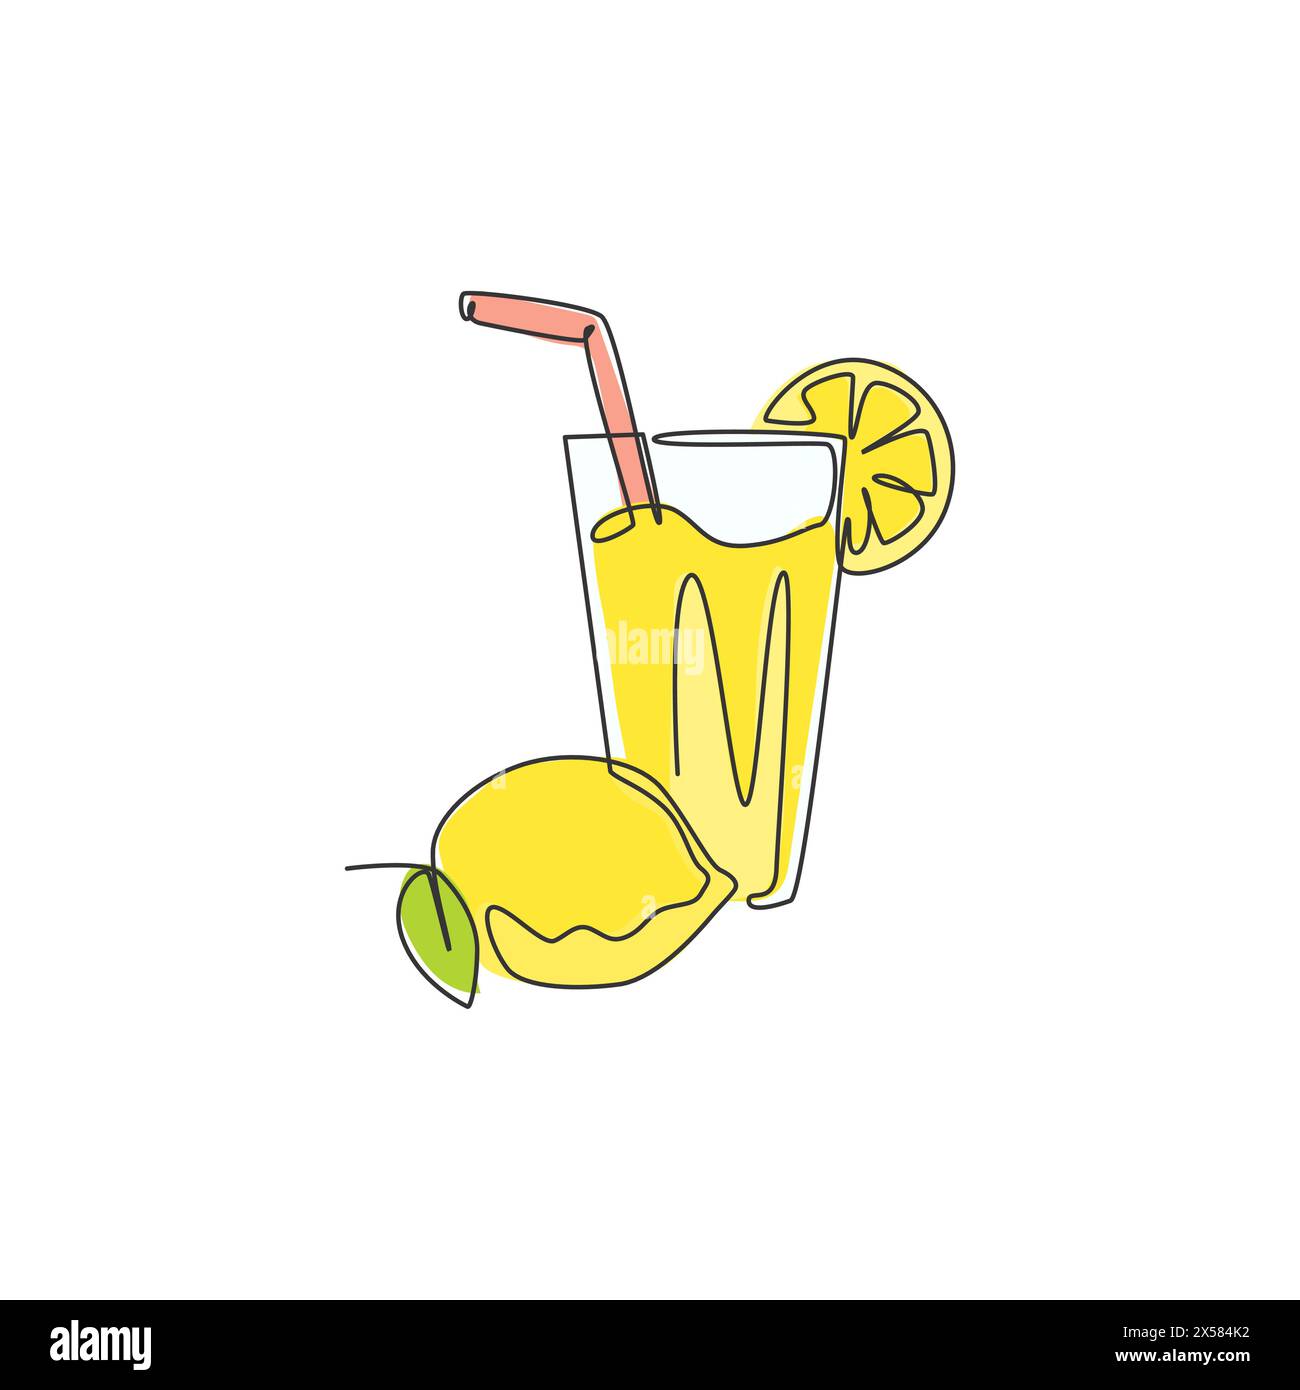 Einzelne durchgehende Linienzeichnung mit stilisiertem Limonade-Eis-Logo. Getränk Zitronengetränk Menü Restaurant Konzept. Moderner einzeiliger Entwurf Vektor i Stock Vektor